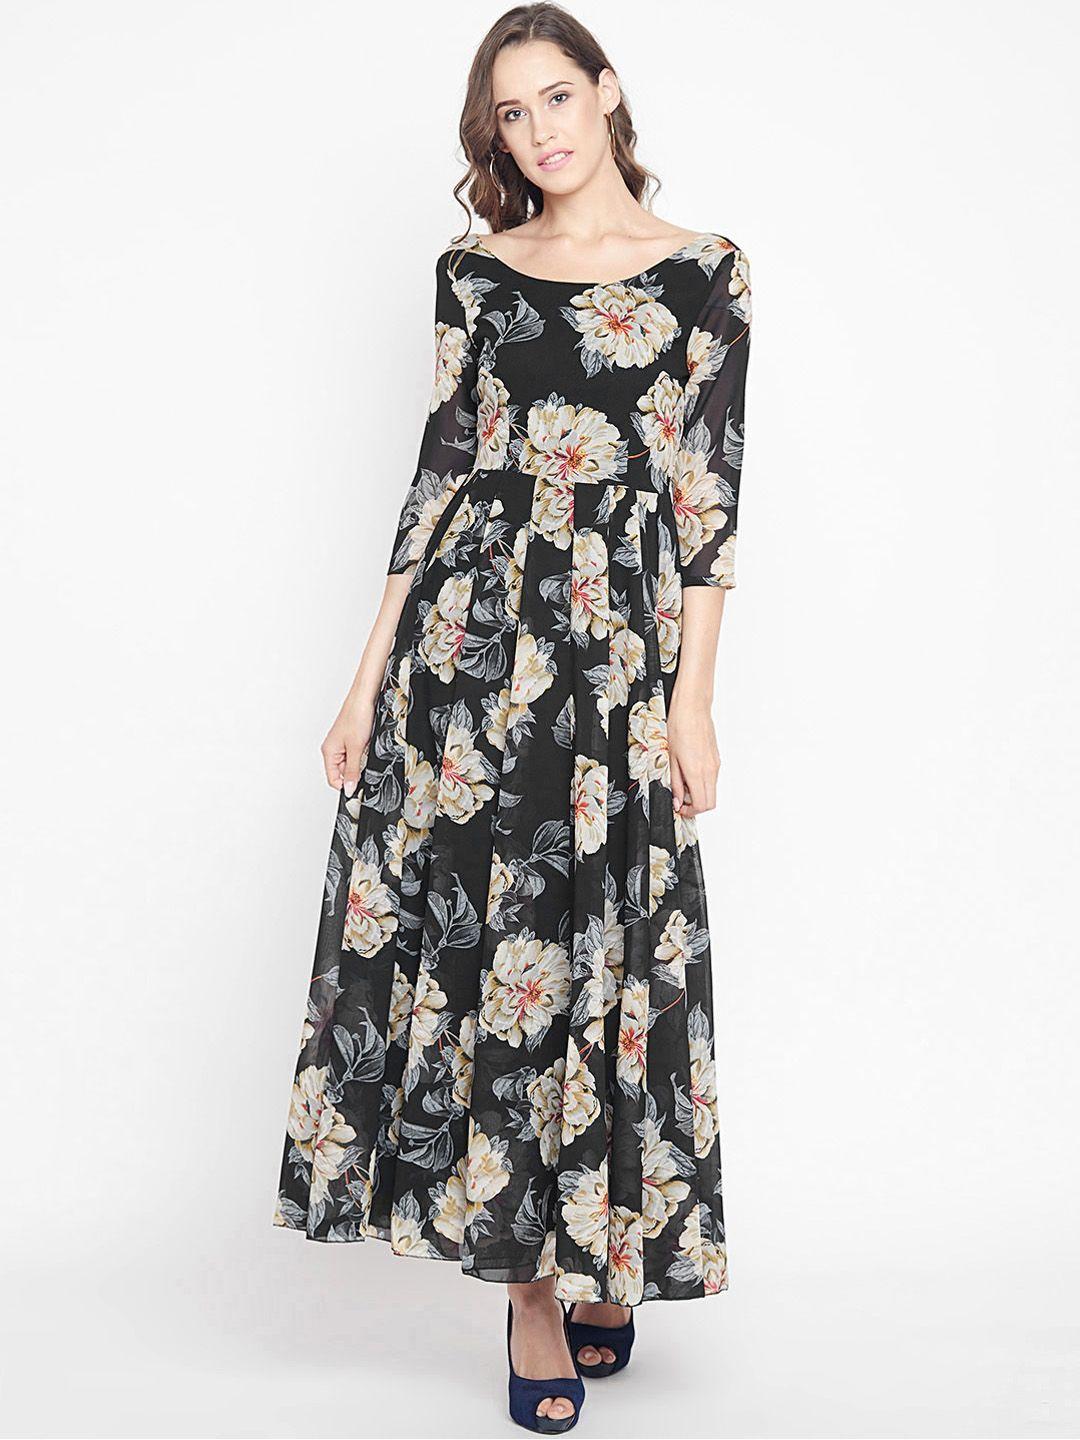 panit women black floral print maxi dress